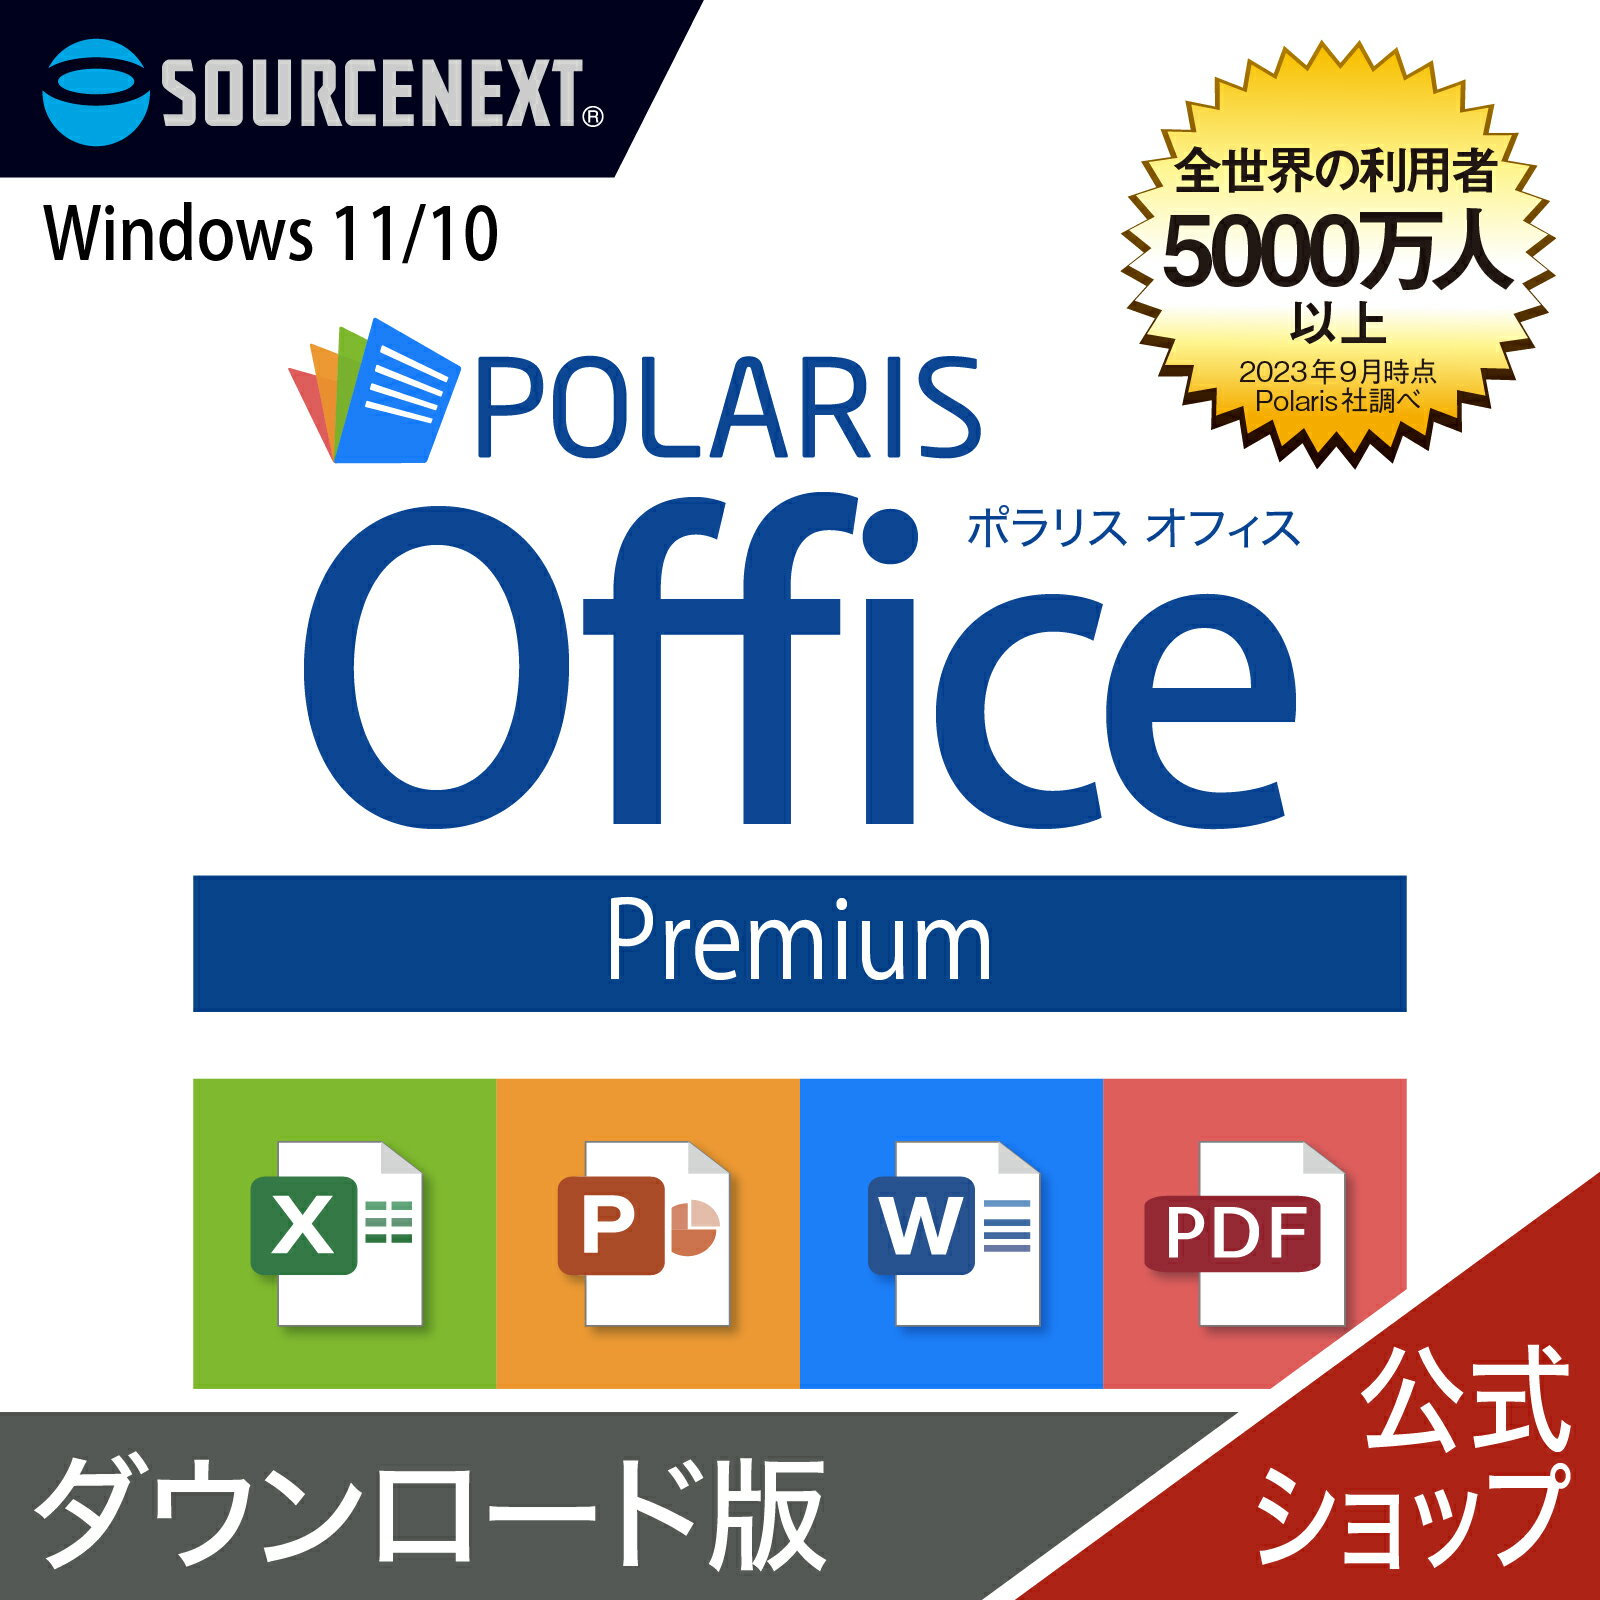 【マラソン限定価格】Polaris Office Premium 【ダウンロード版】DL_SNR Windows用 オフィスソフト ポラリス Microsoft Office オフィス 互換性 Excel PowerPoint Word パワーポイント エクセルソフト ワード